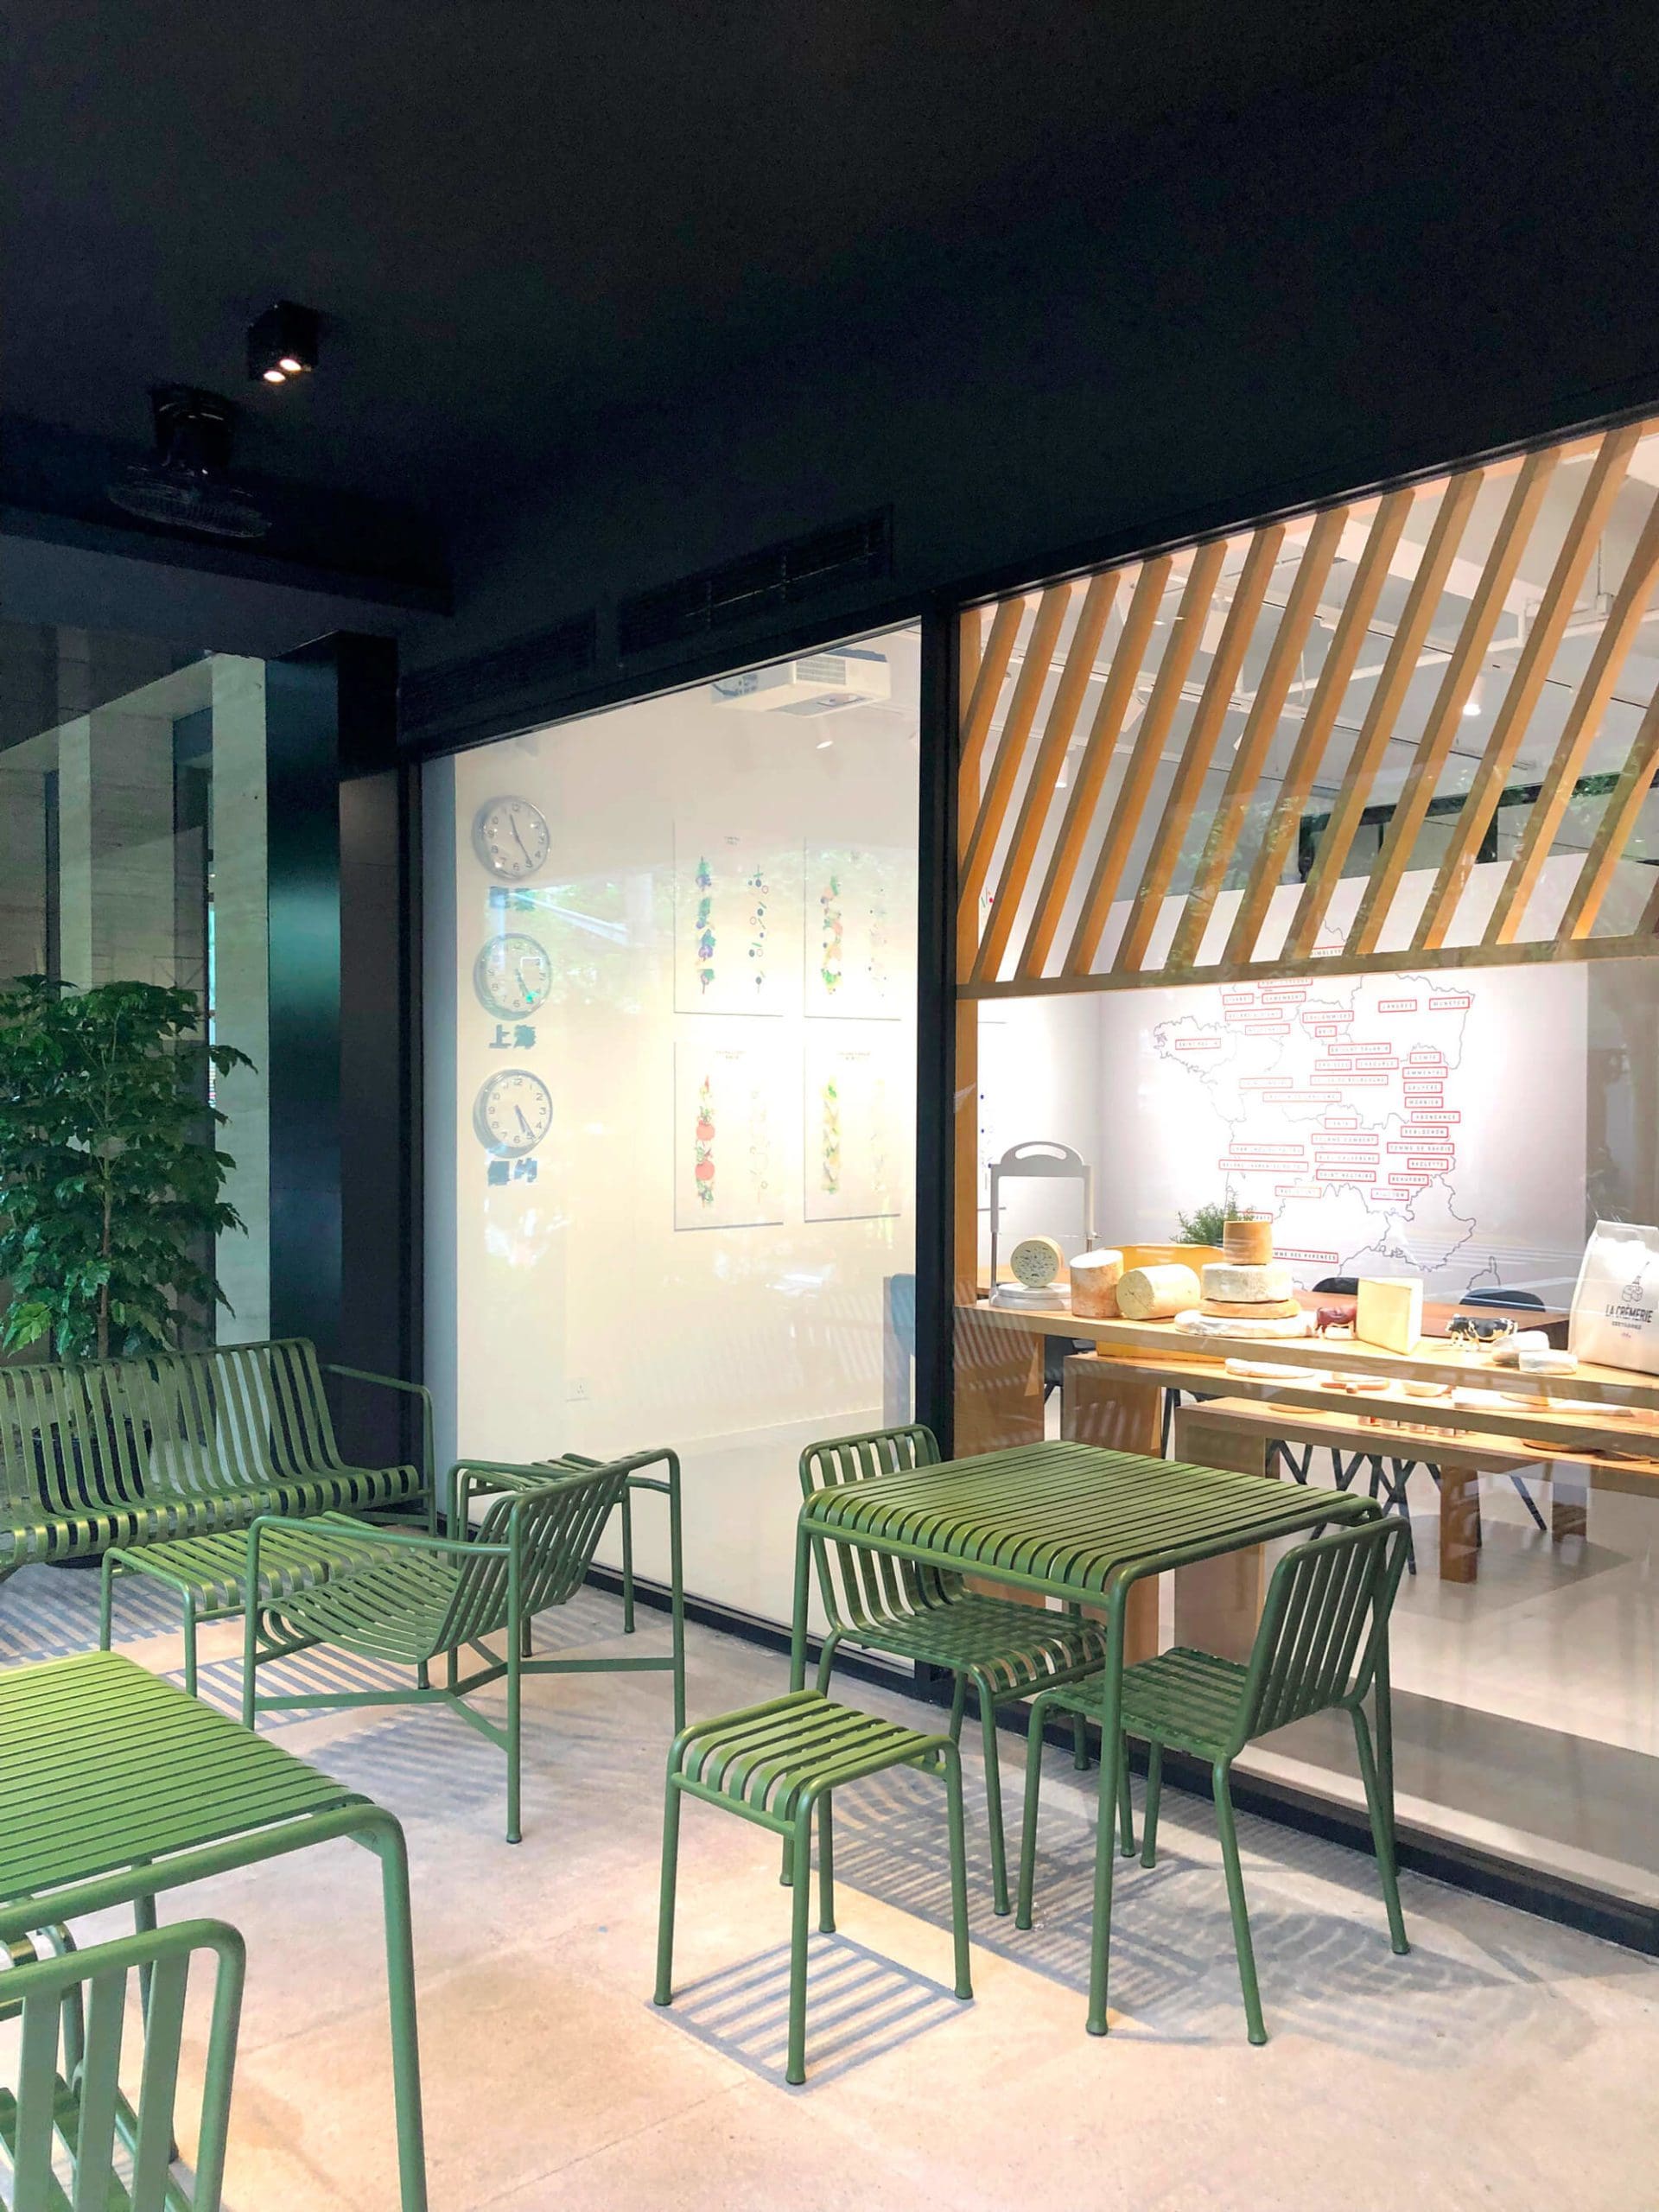 le mobilier Hay dessiné par les frères breton bouroullec choisit par IchetKar pour la terrasse du concept store la cremerie a Shanghai